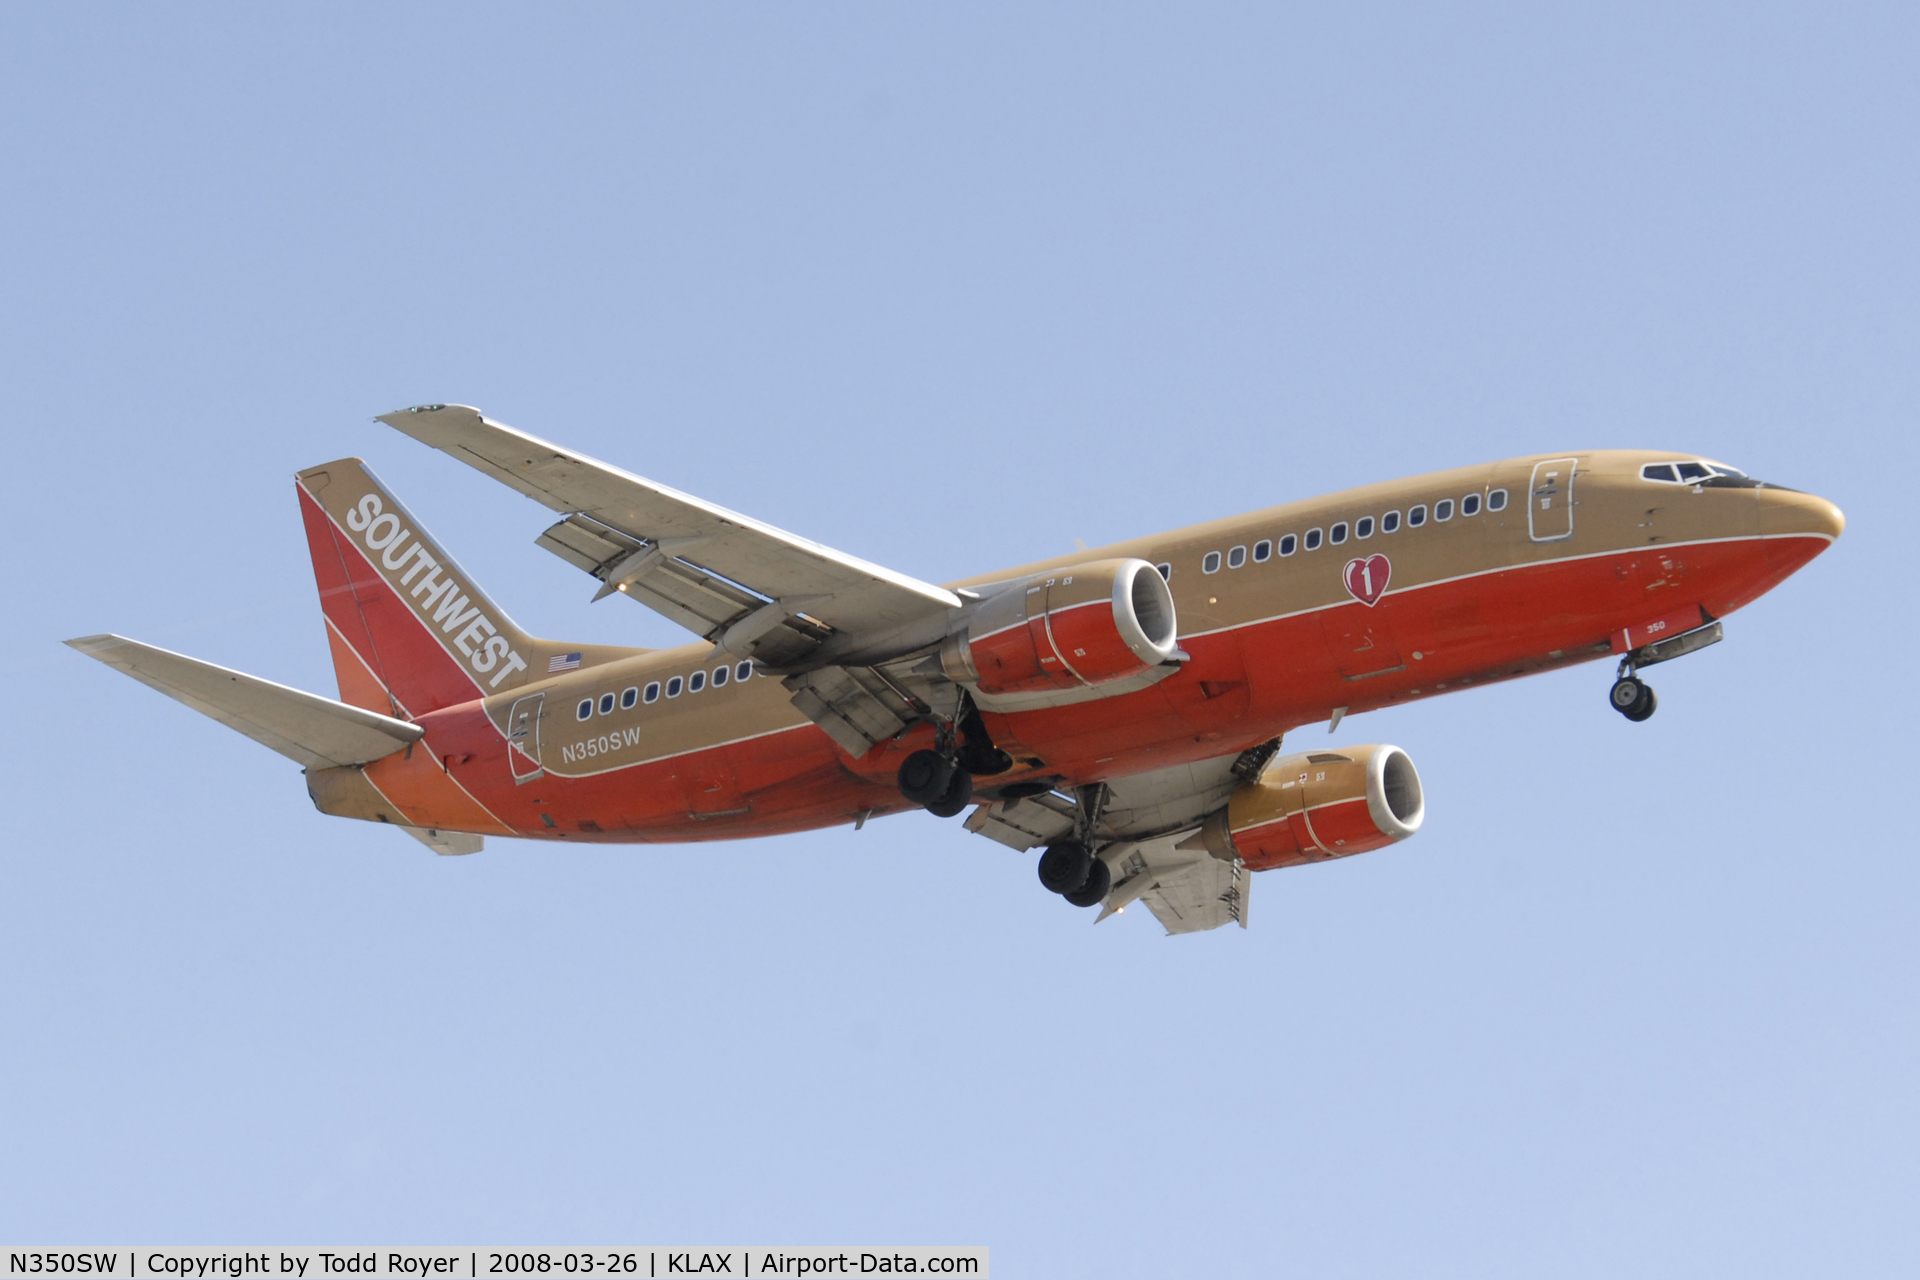 N350SW, 1989 Boeing 737-3H4 C/N 24409, Landing 24R at LAX